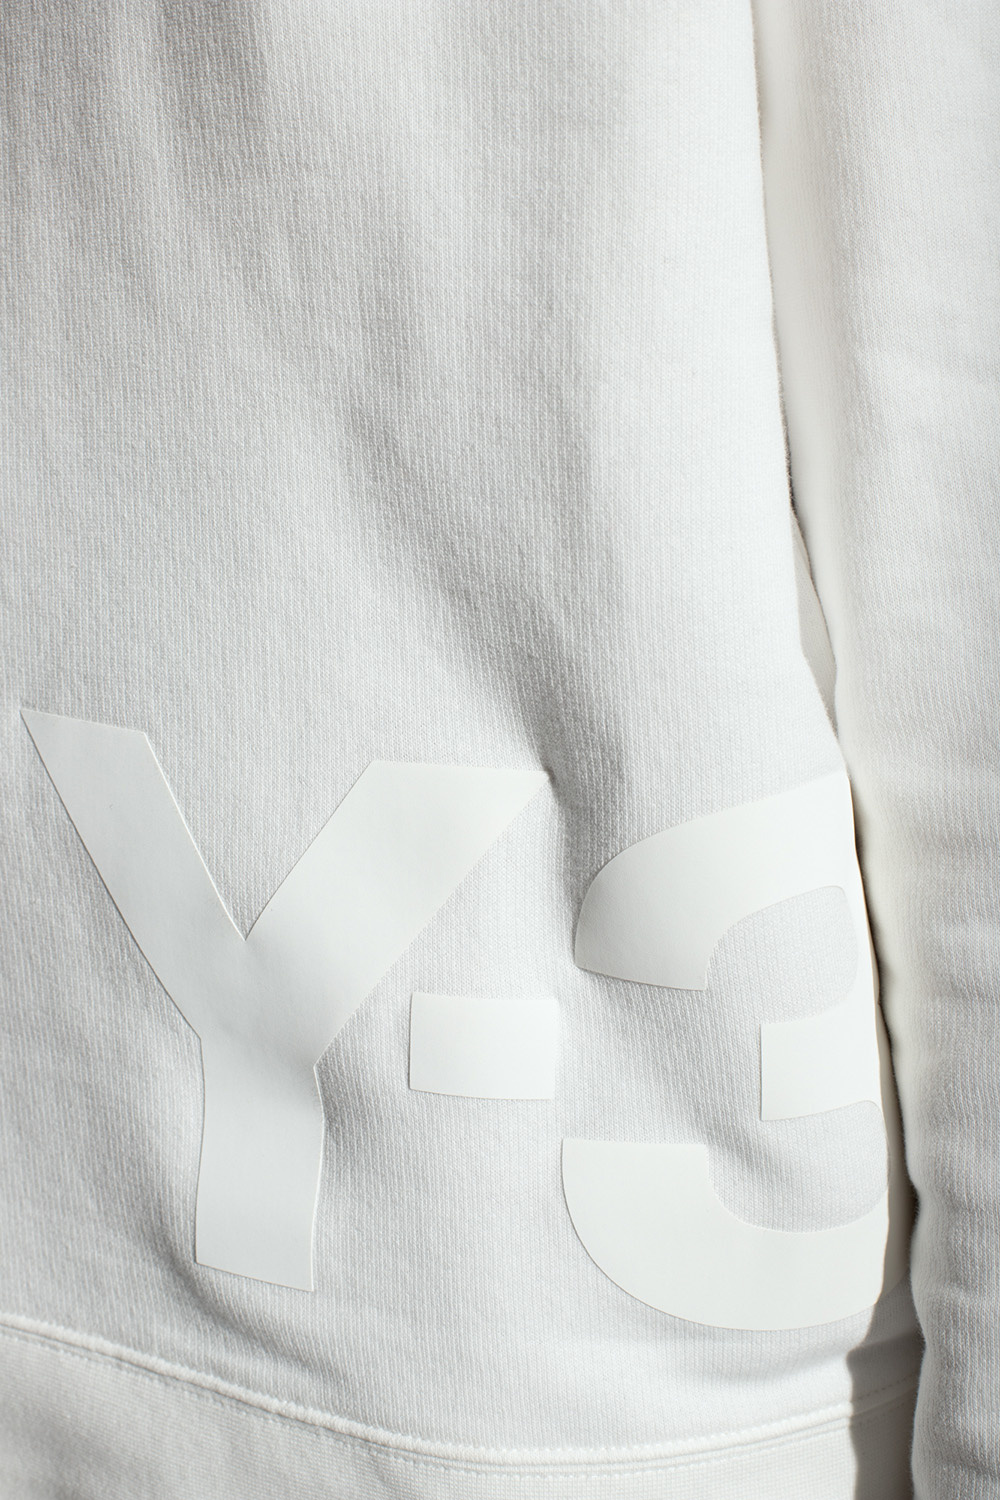 Y-3 Yohji Yamamoto Logo High sweatshirt